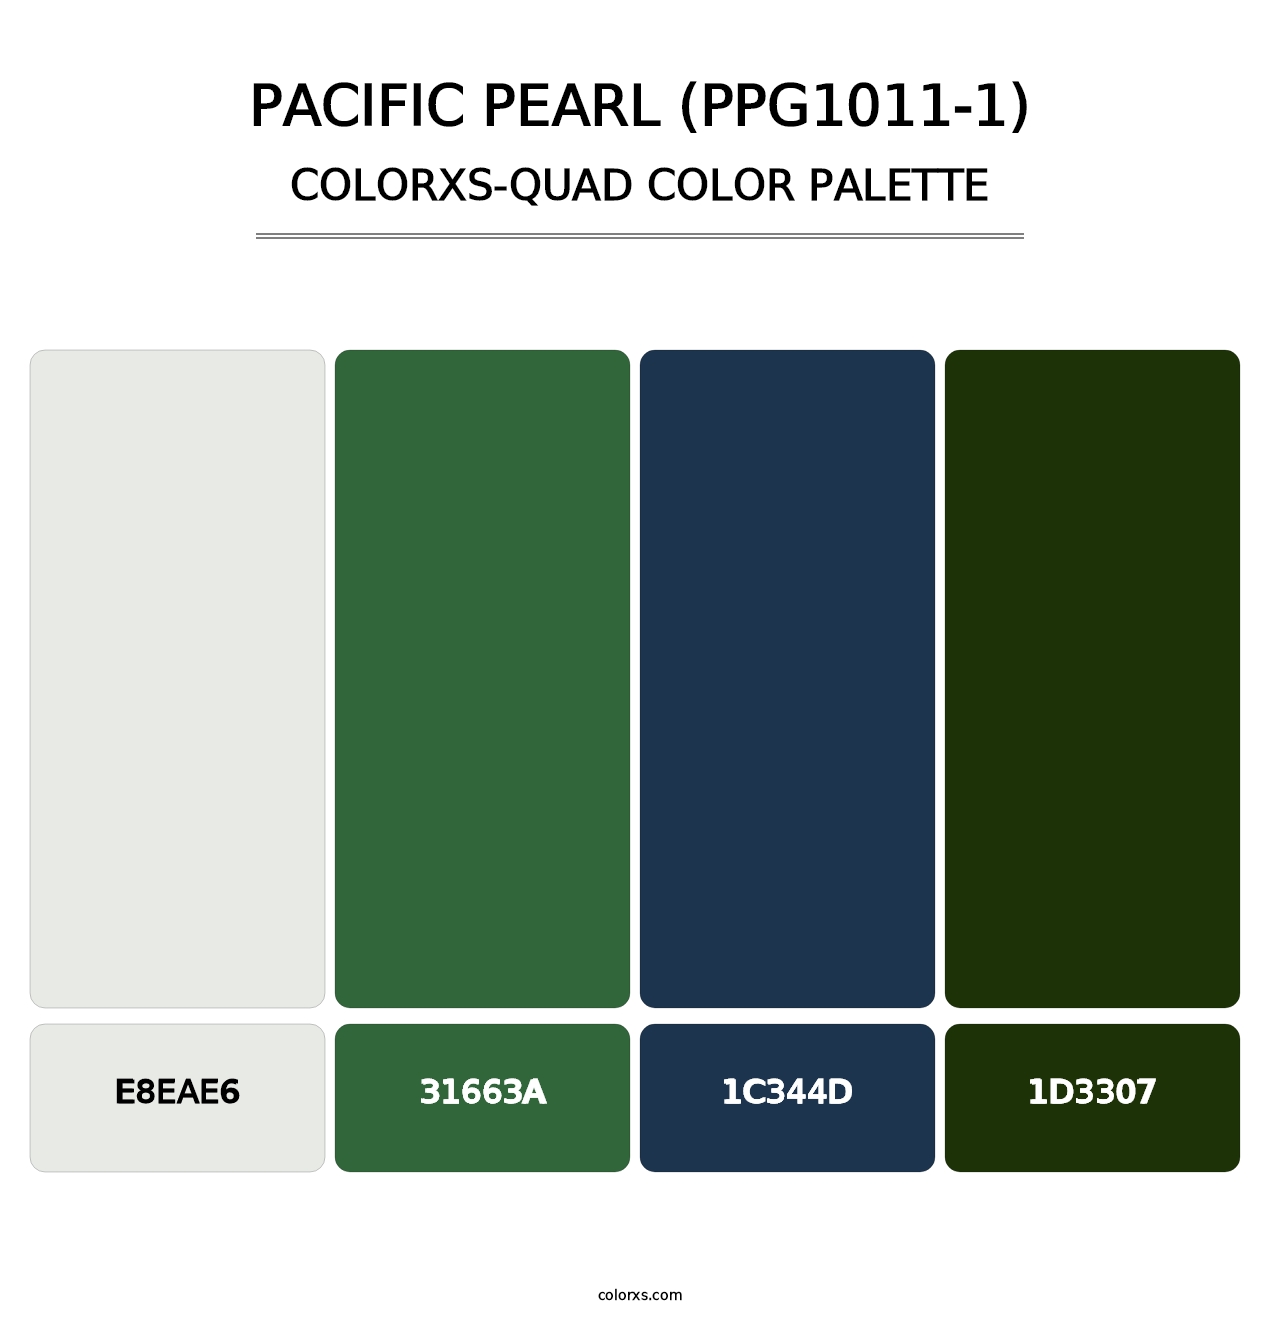 Pacific Pearl (PPG1011-1) - Colorxs Quad Palette